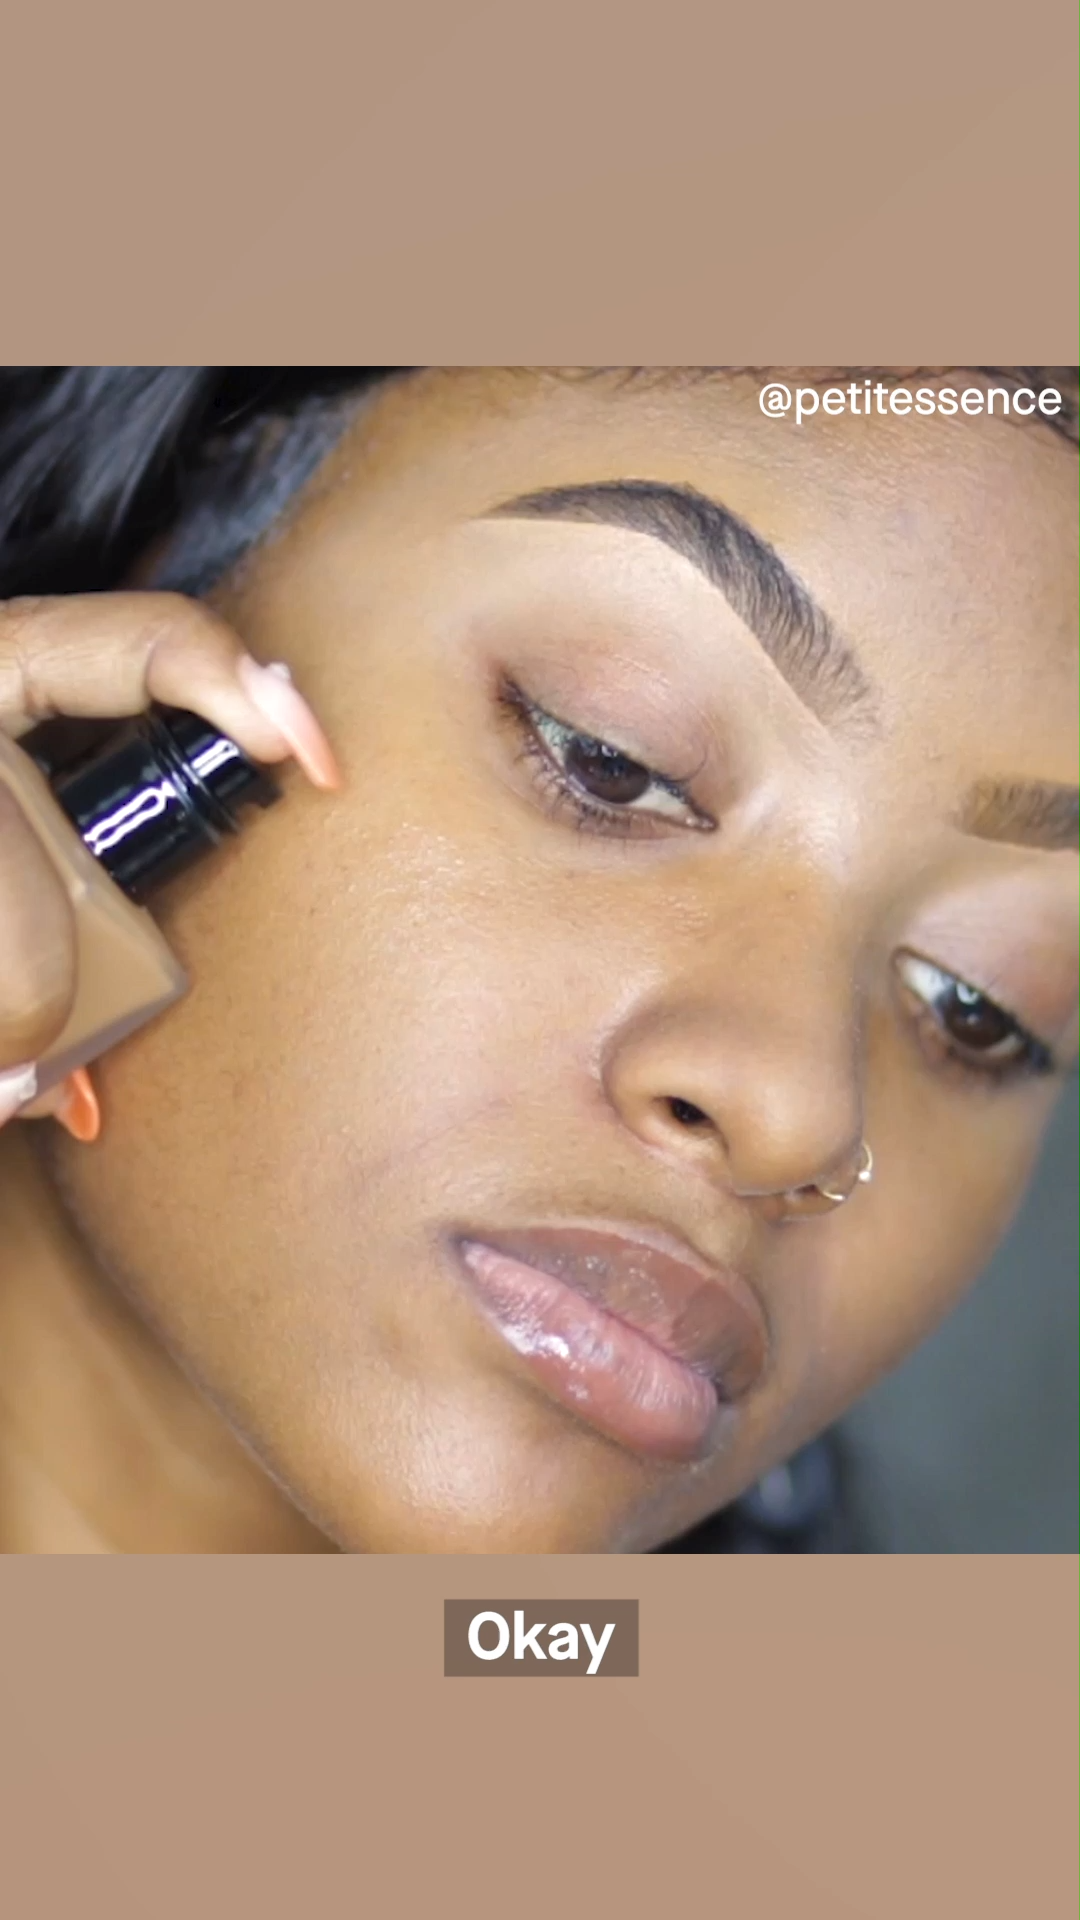 15 makeup Face contouring ideas